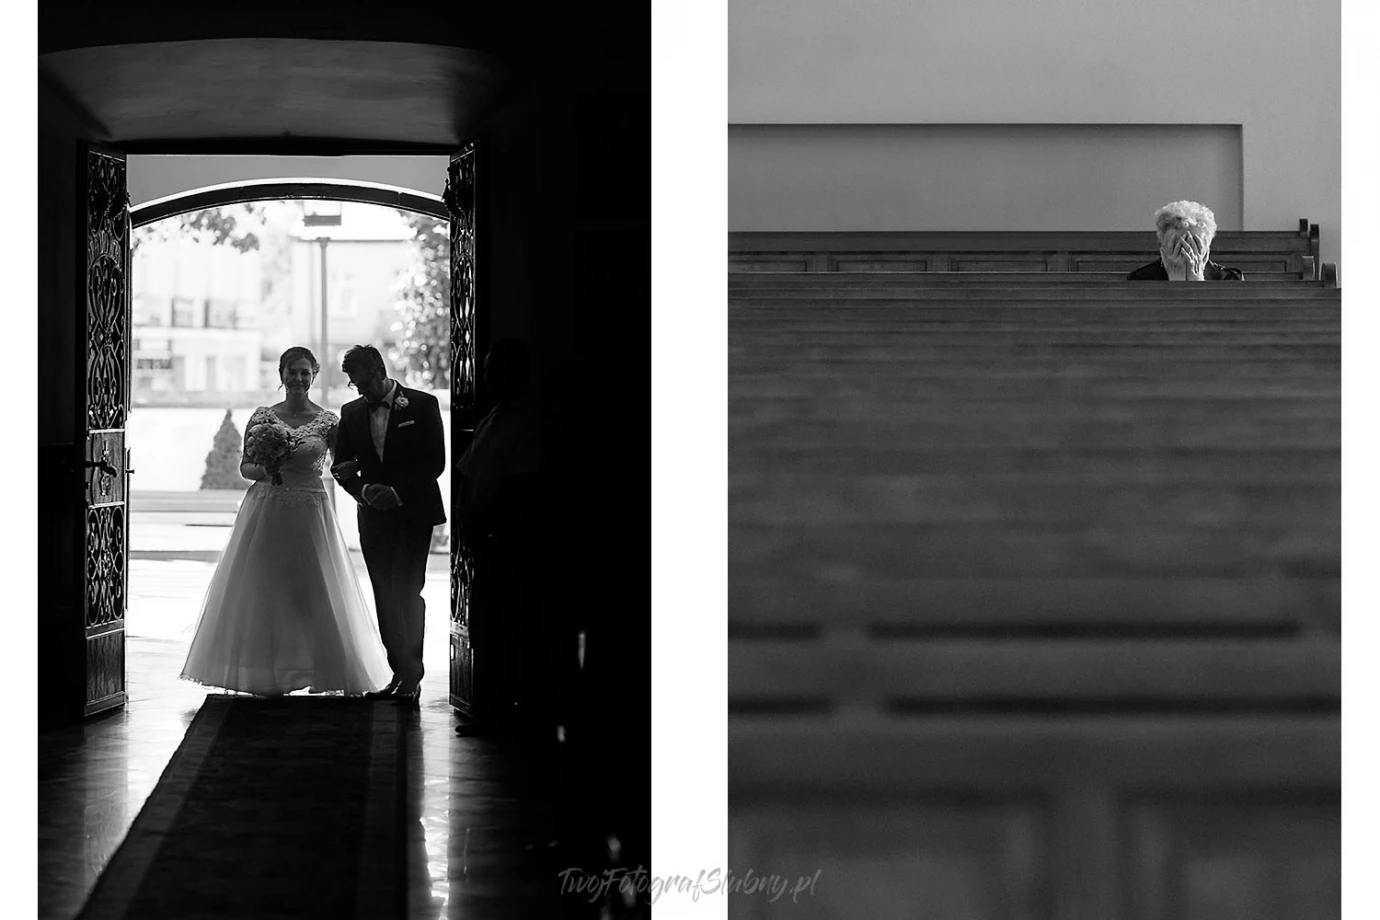 zdjęcia warszawa fotograf robert-wroblewski portfolio zdjecia slubne inspiracje wesele plener slubny sesja slubna